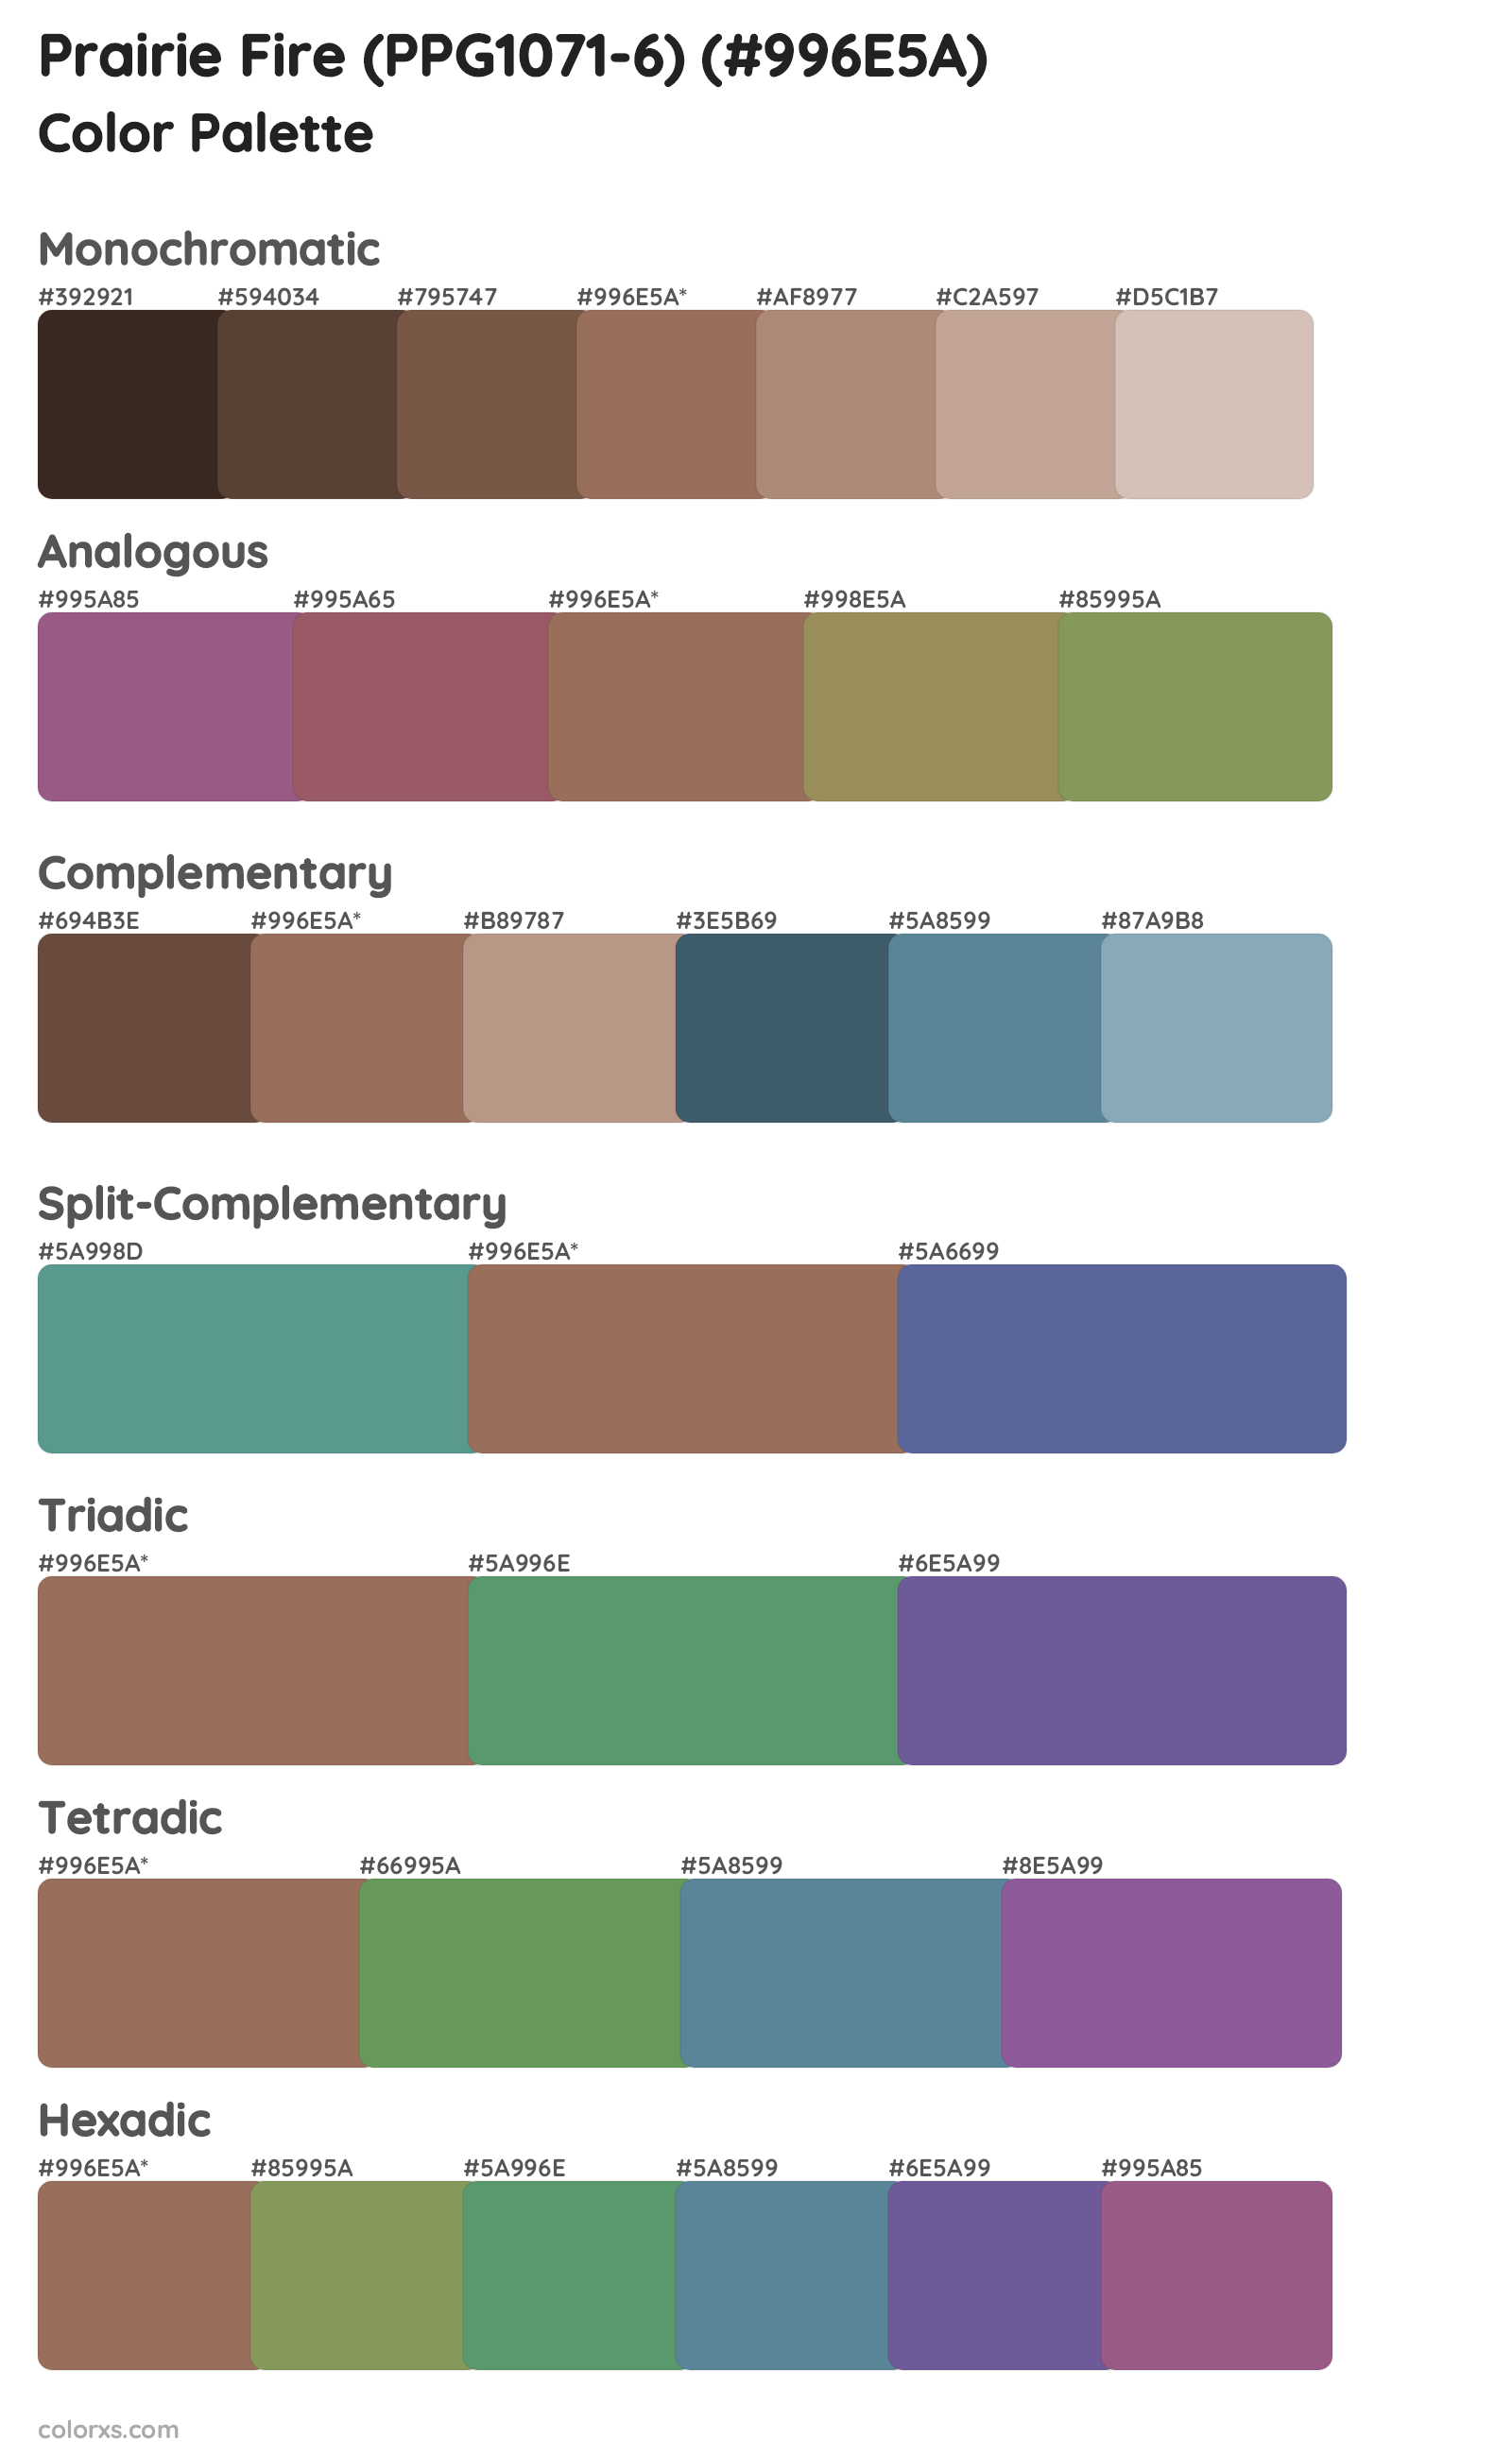 Prairie Fire (PPG1071-6) Color Scheme Palettes